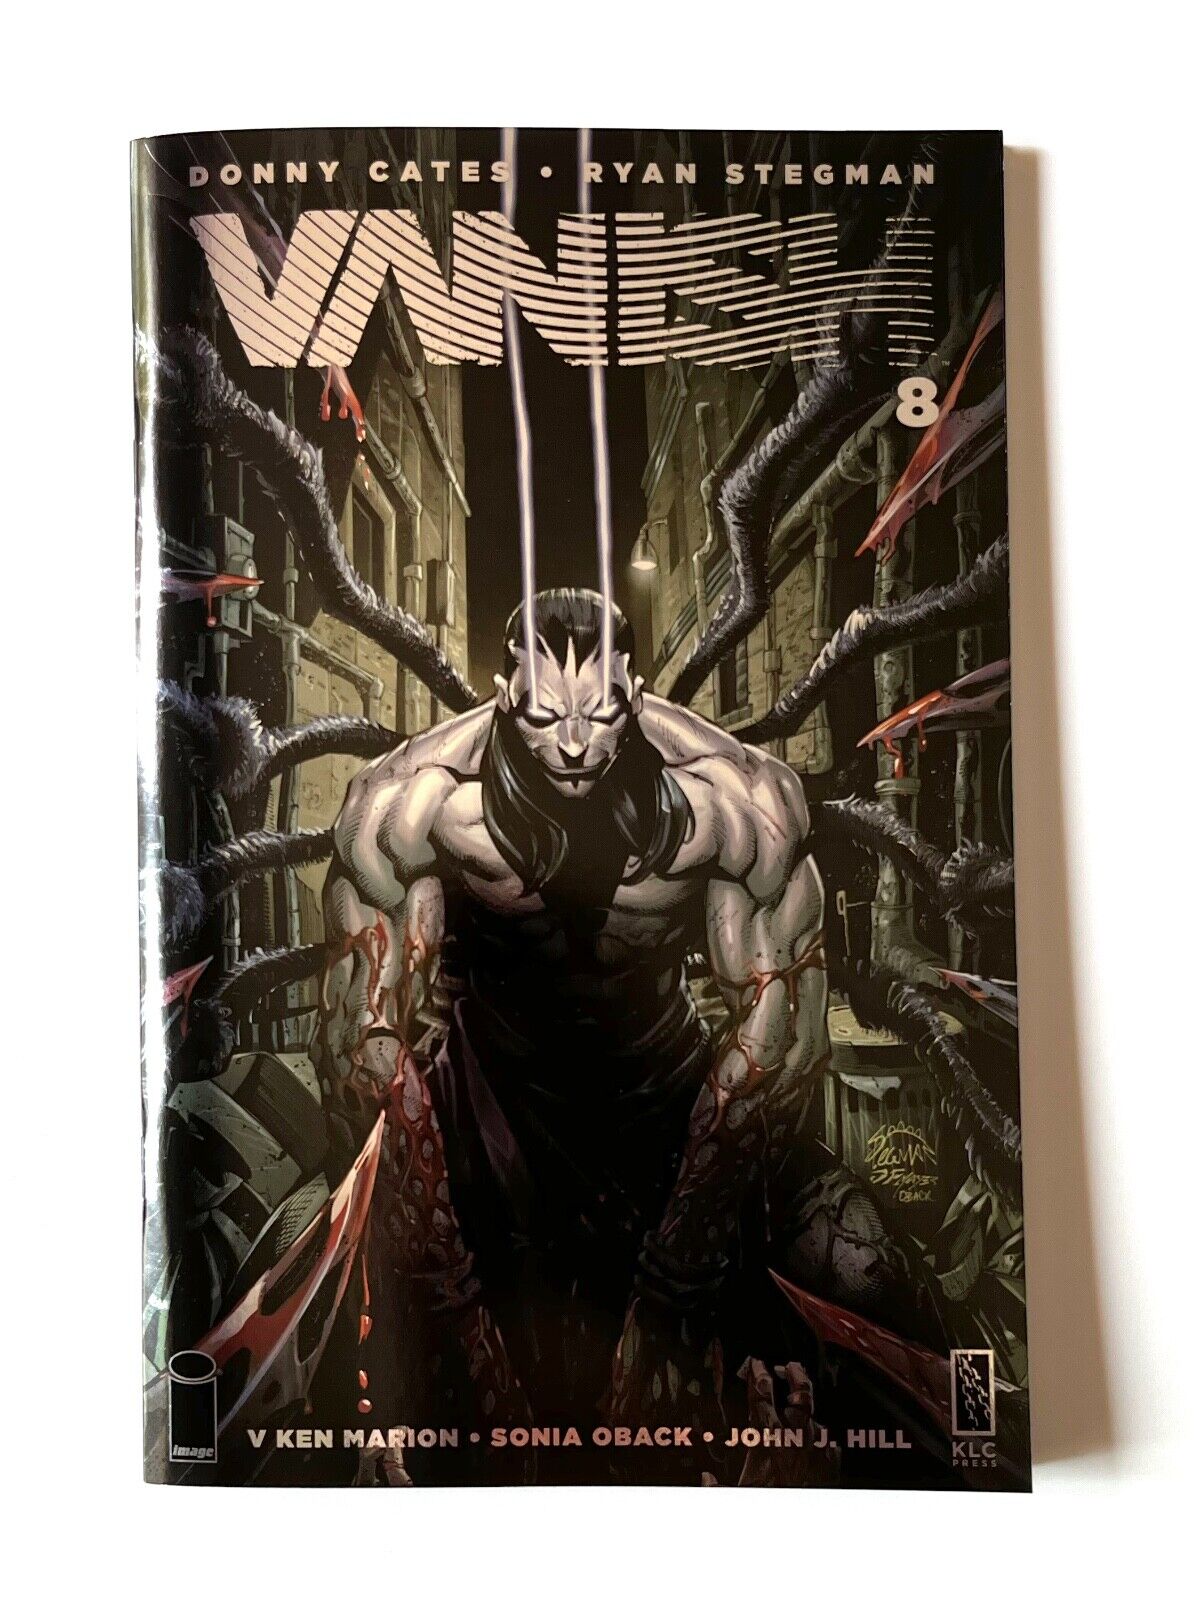 VANISH #8 Ryan Stegman FOIL Cover 1 per store variant Cates Venom NM RARE Image